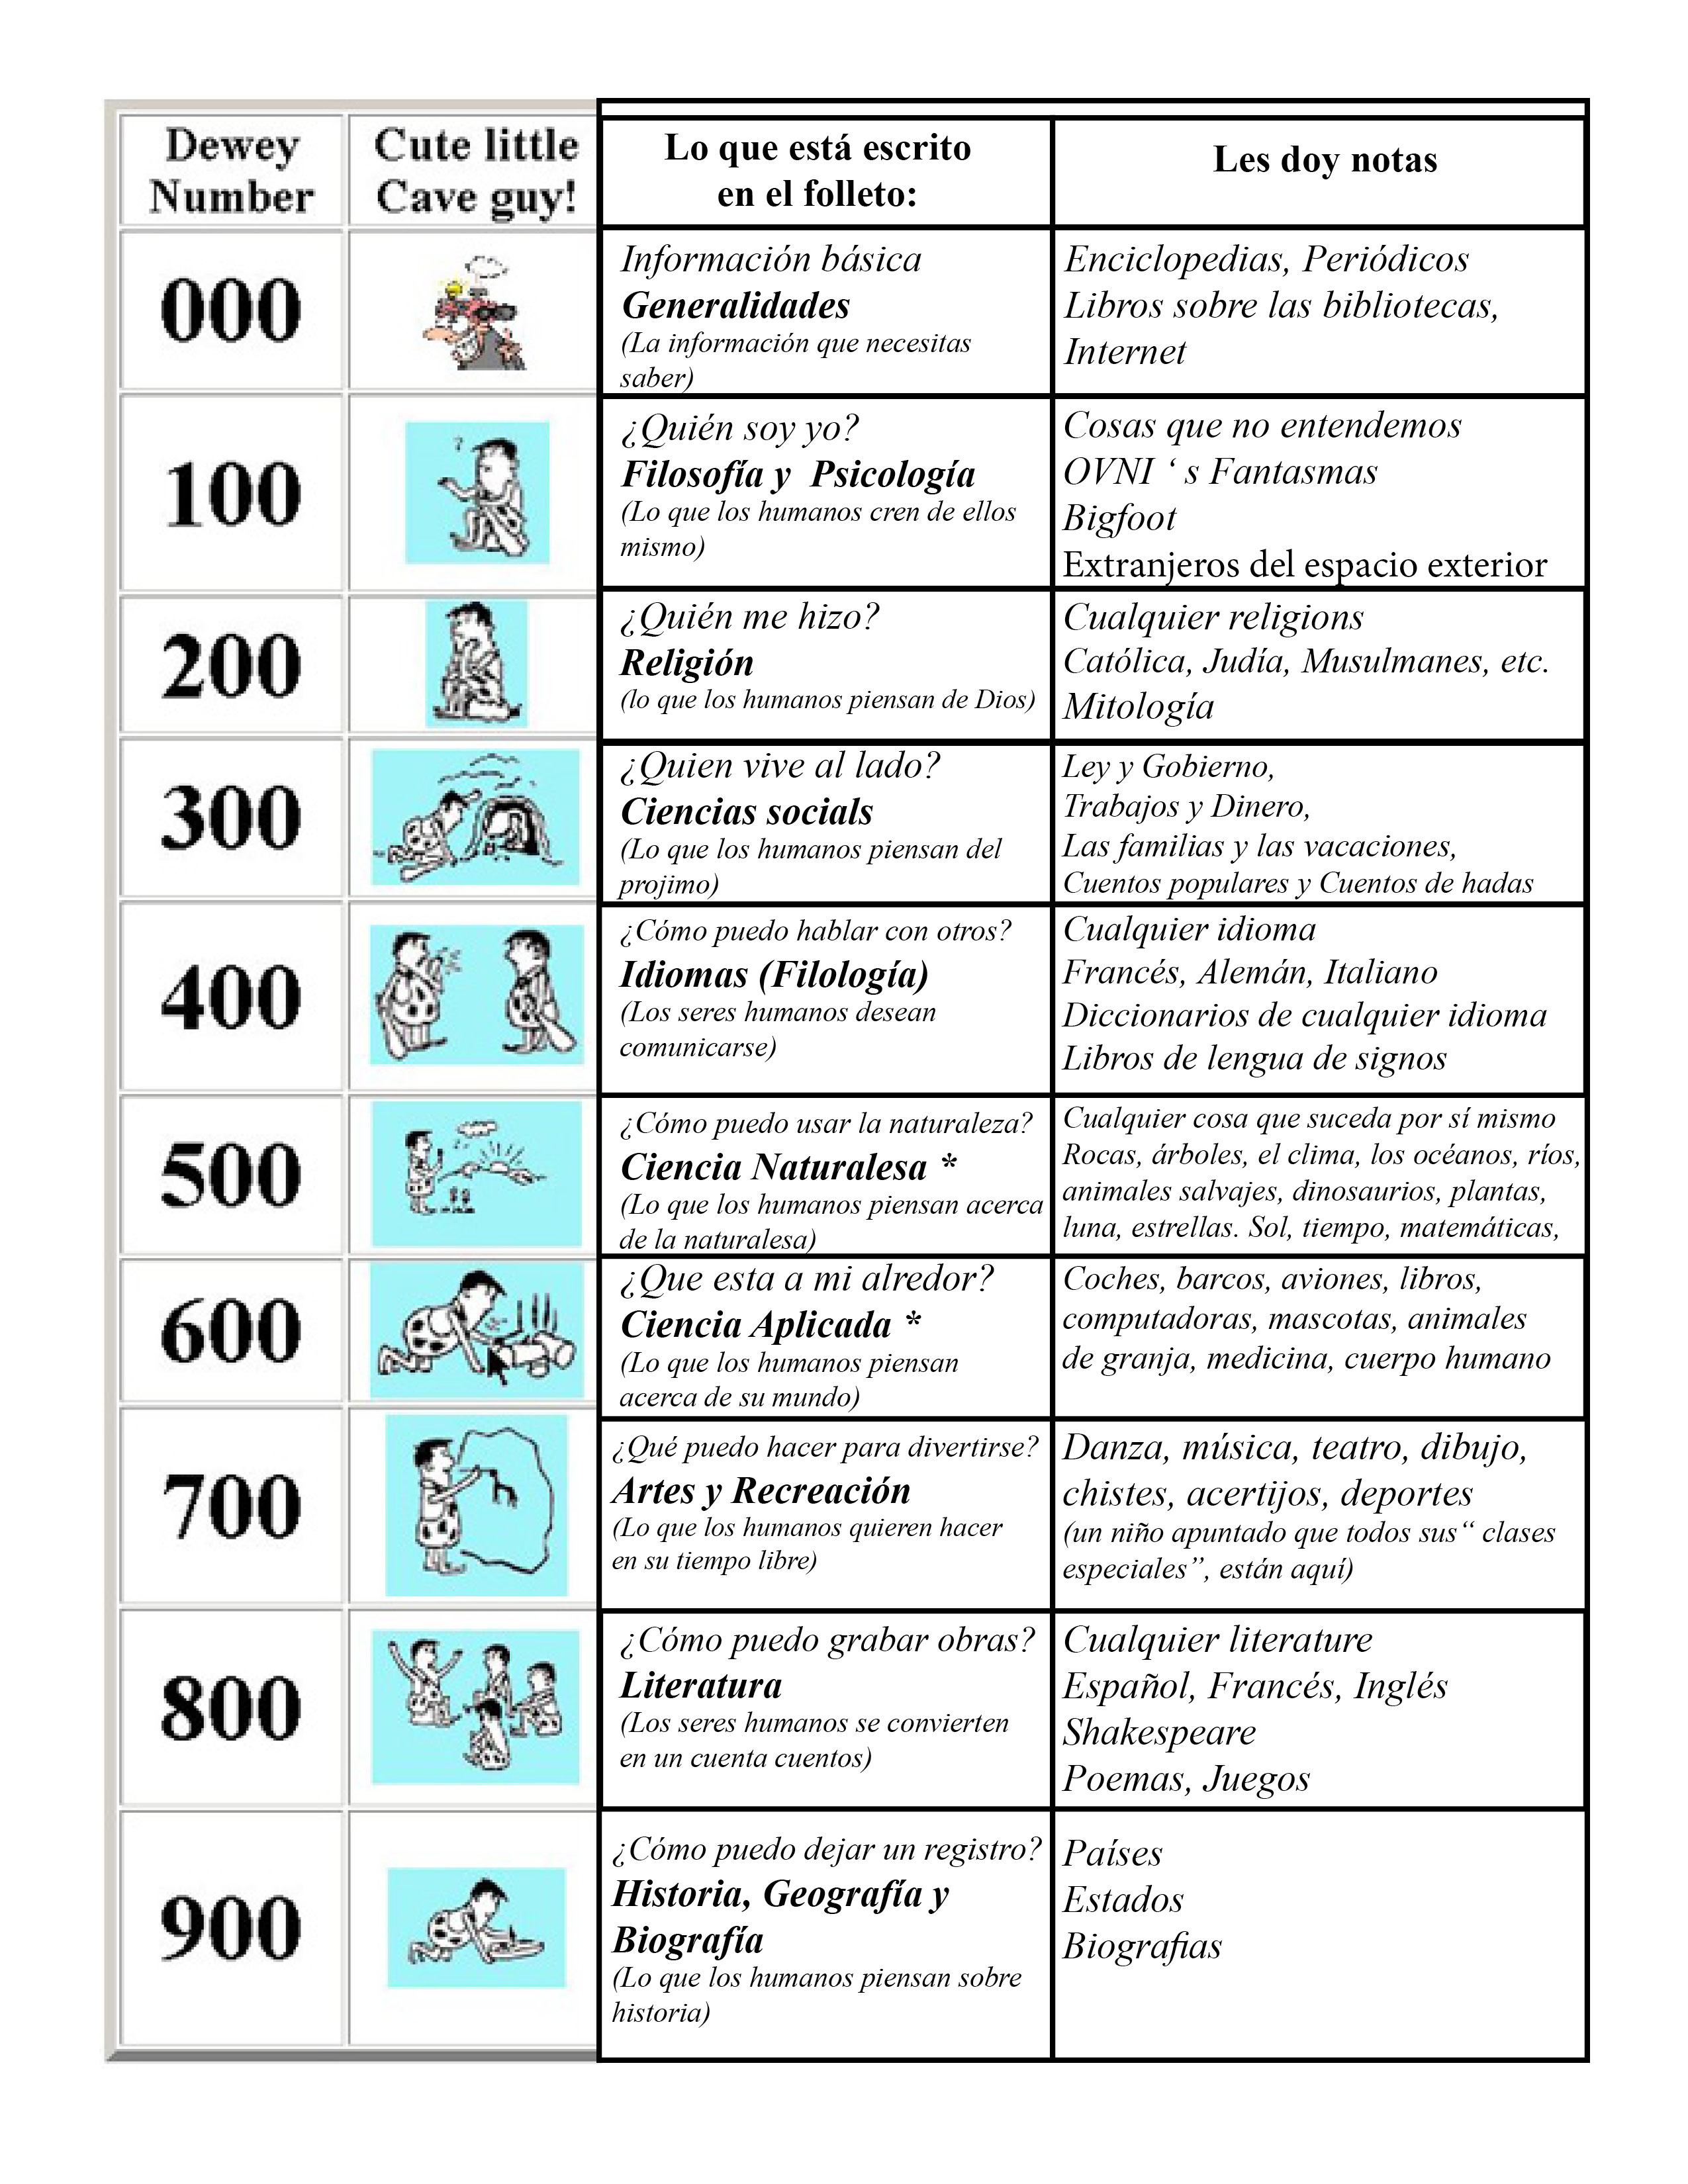 Ddc Classification Chart